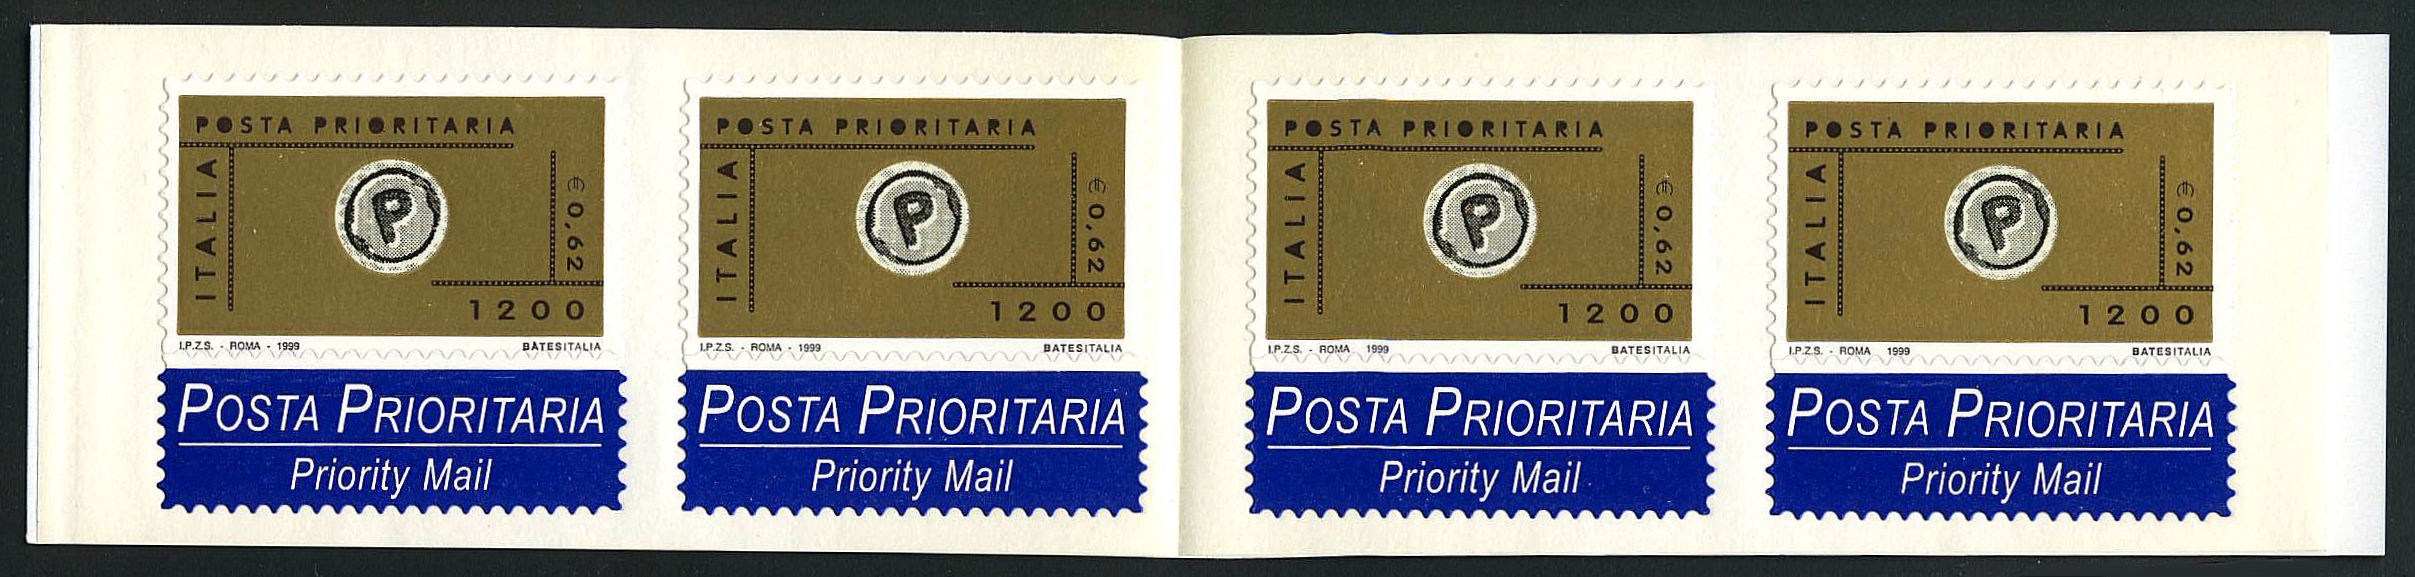 1999 - 1 x Libretto Posta Prioritaria 4 x L.1200 - Sas.L21.jpg